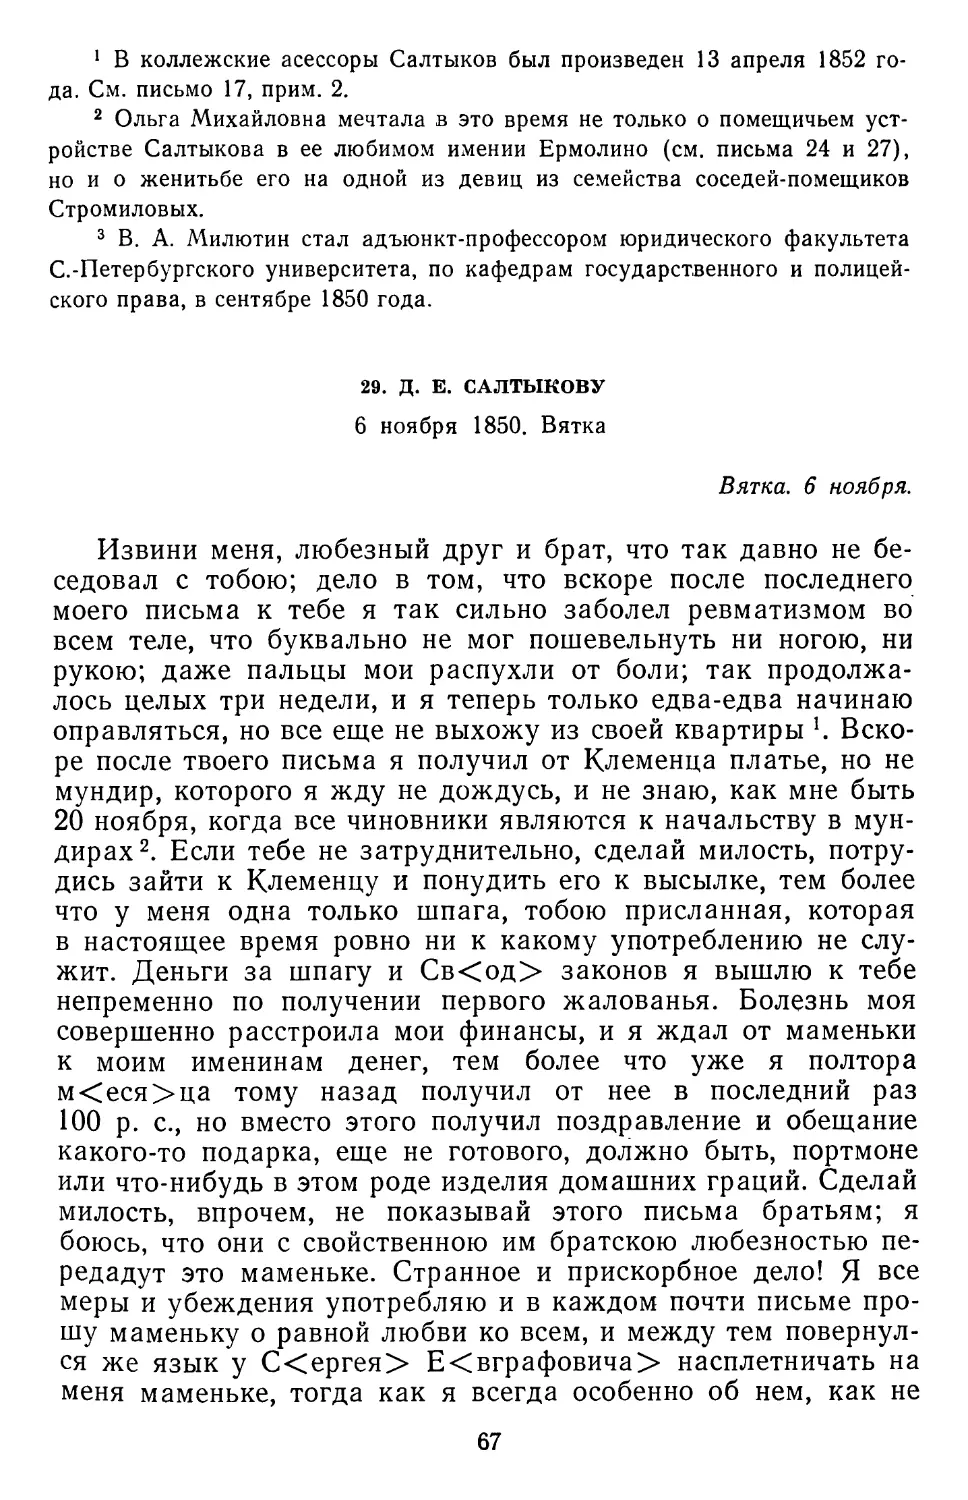 29.Д. Е. Салтыкову. 6 ноября 1850. Вятка